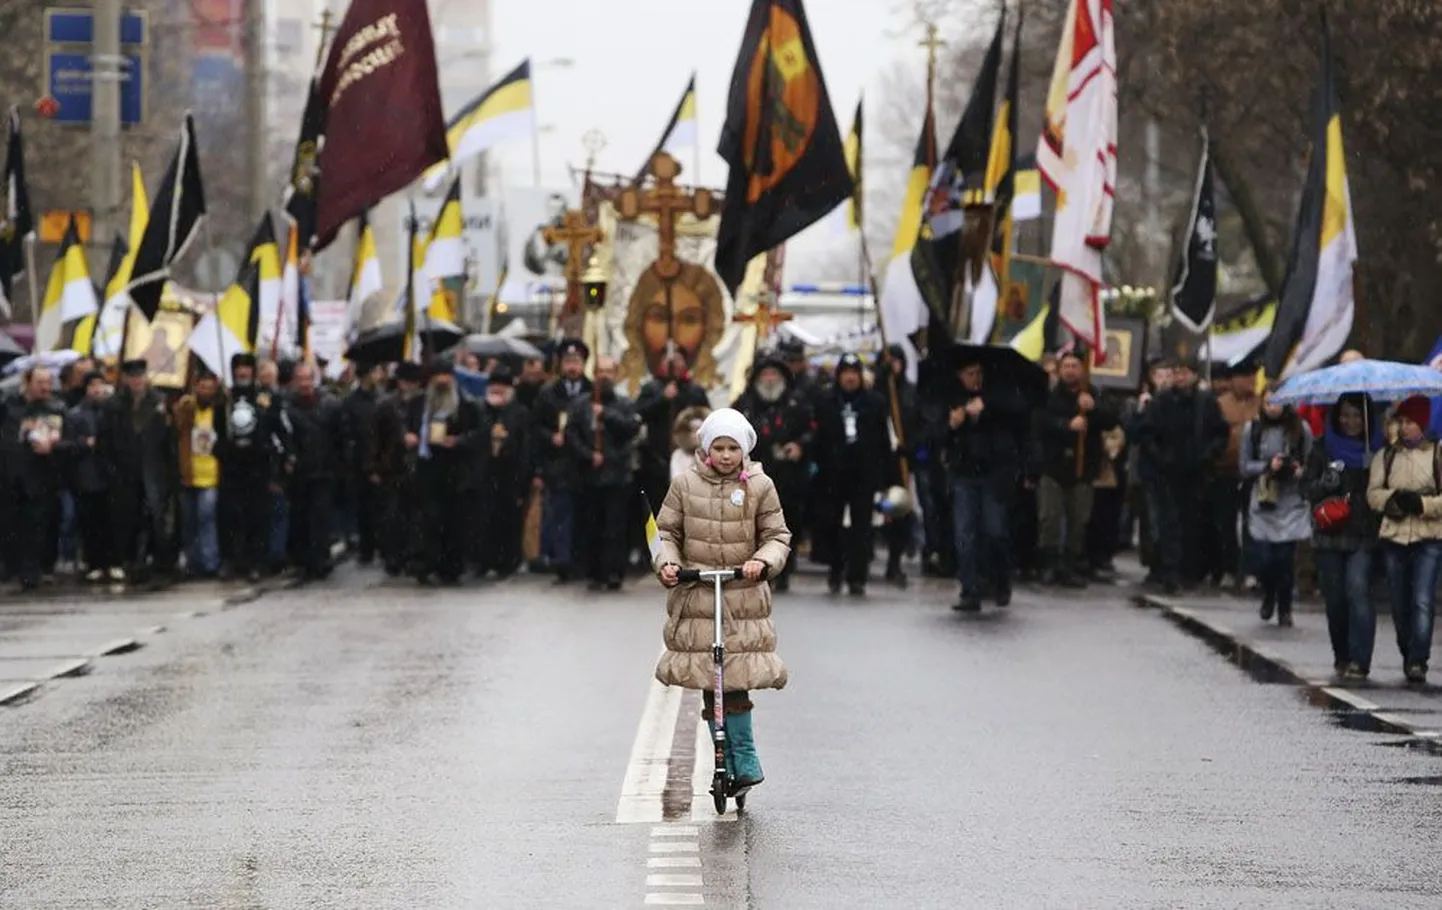 Eilne vaade Vene marsile, kus paljudel osalejatel olid käes keiserliku valitsuse must kolla valged trikoloorid. See on ainus lipp, mille all Venemaa pole pidanud vastu võtma ühtegi kaotust.